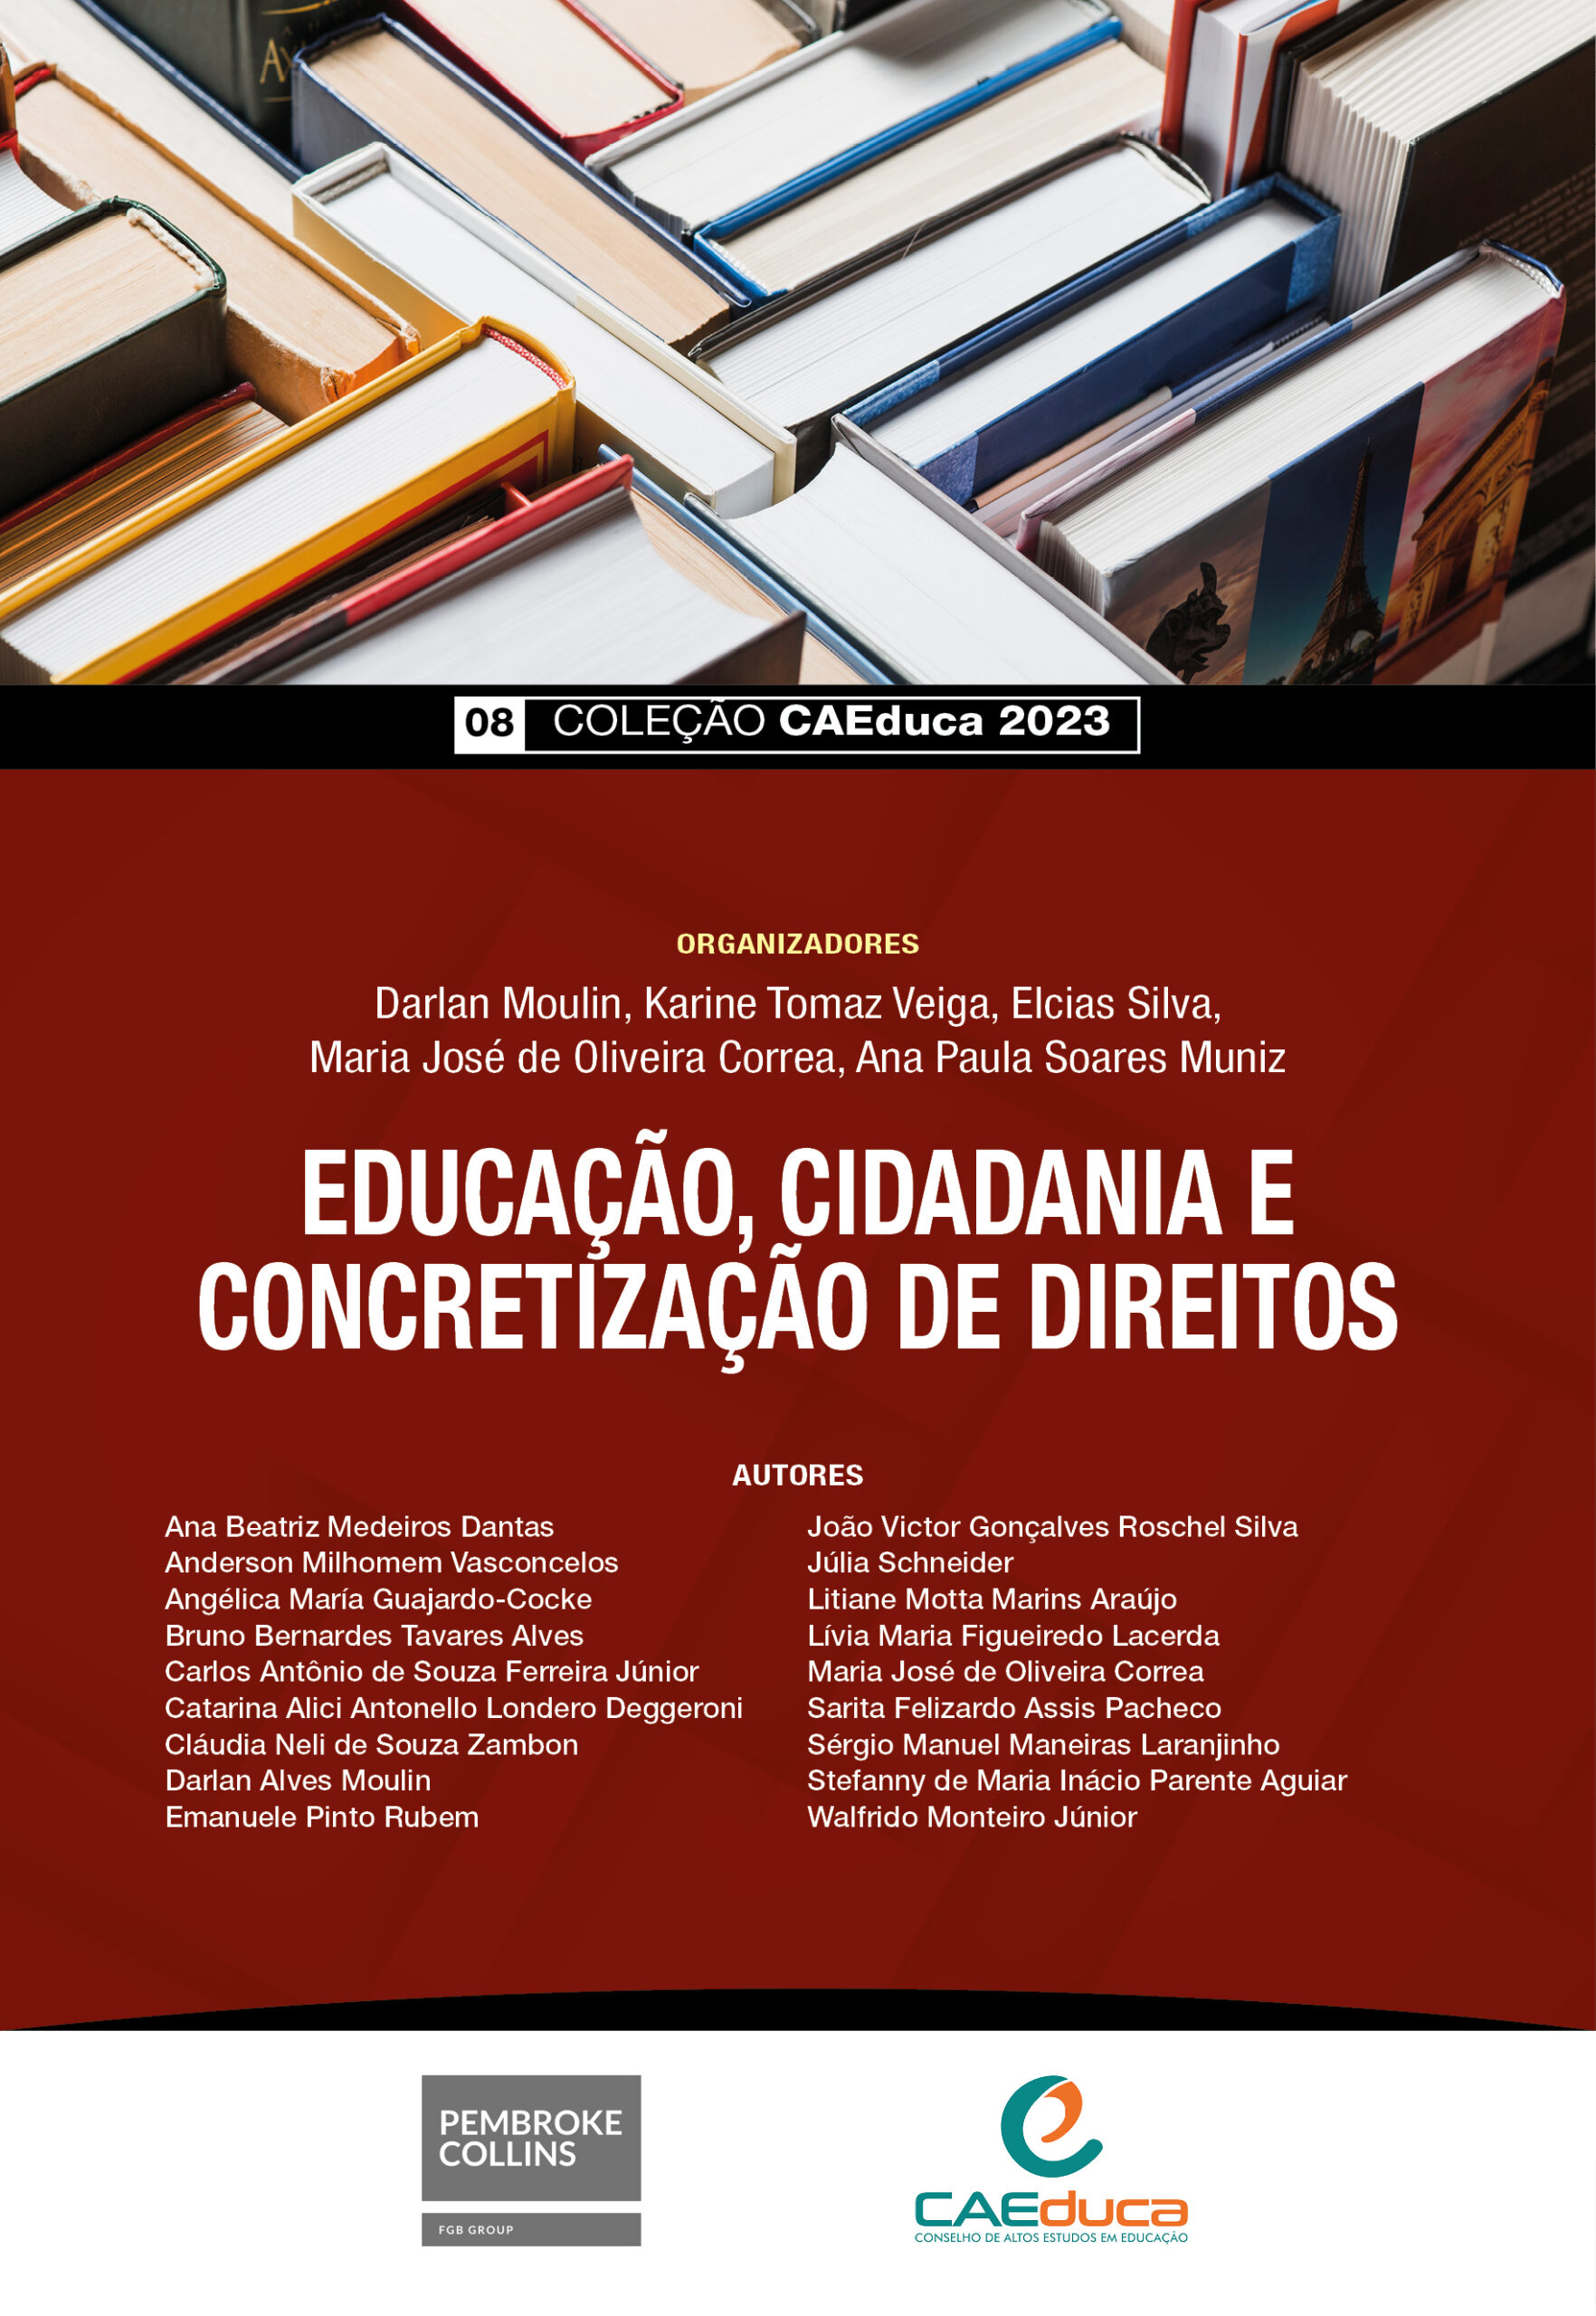 08_Capa_CAEDUCA 2023_EDUCAÇÃO, CIDADANIA E CONCRETIZAÇÃO DE DIREITOS